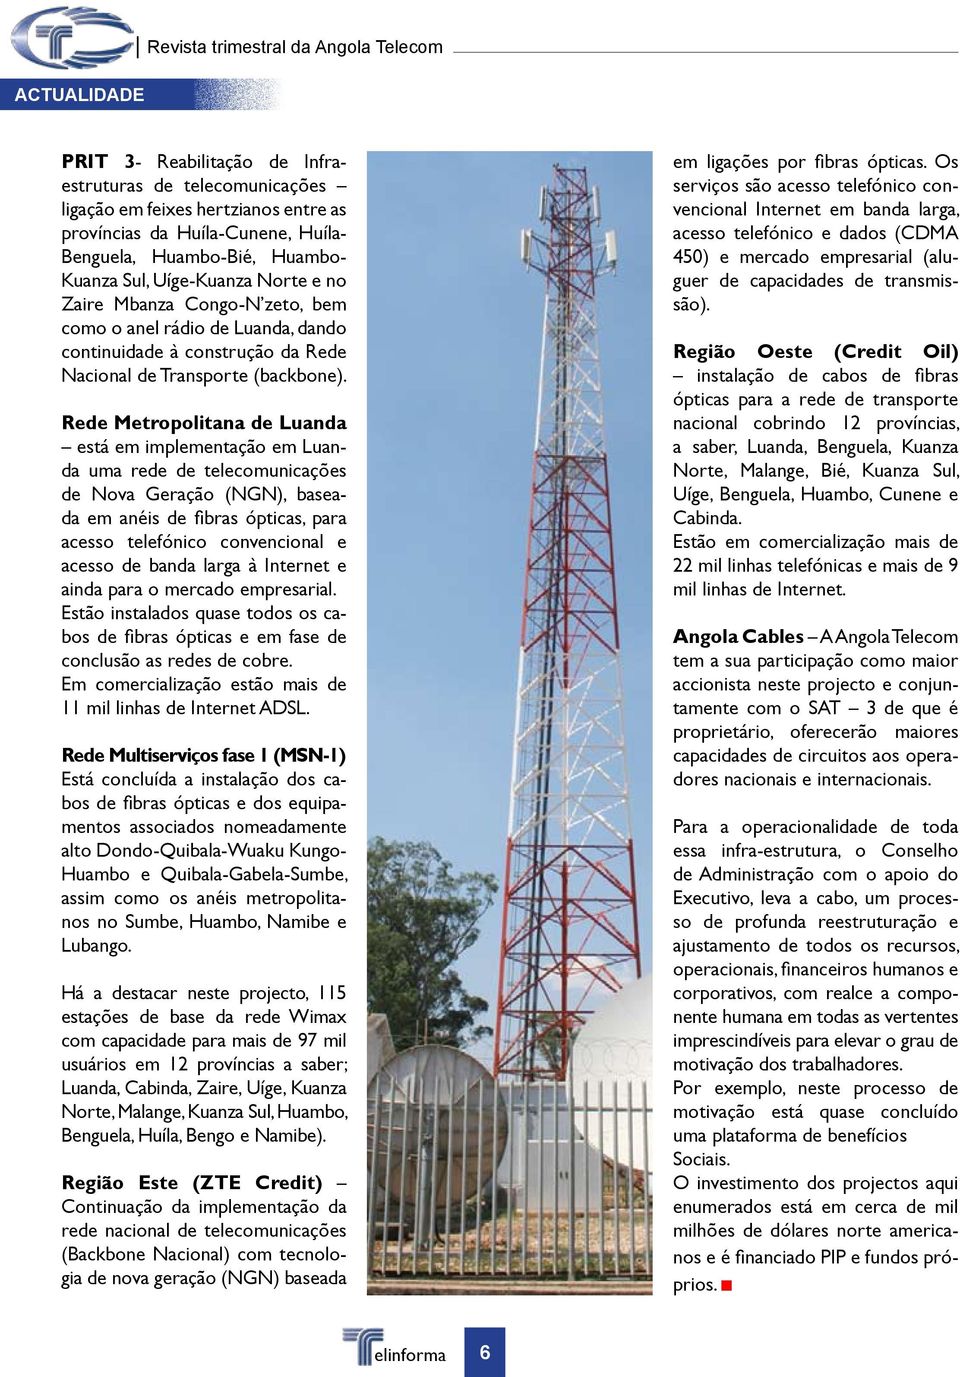 Rede Metropolitana de Luanda está em implementação em Luanda uma rede de telecomunicações de Nova Geração (NGN), baseada em anéis de fibras ópticas, para acesso telefónico convencional e acesso de